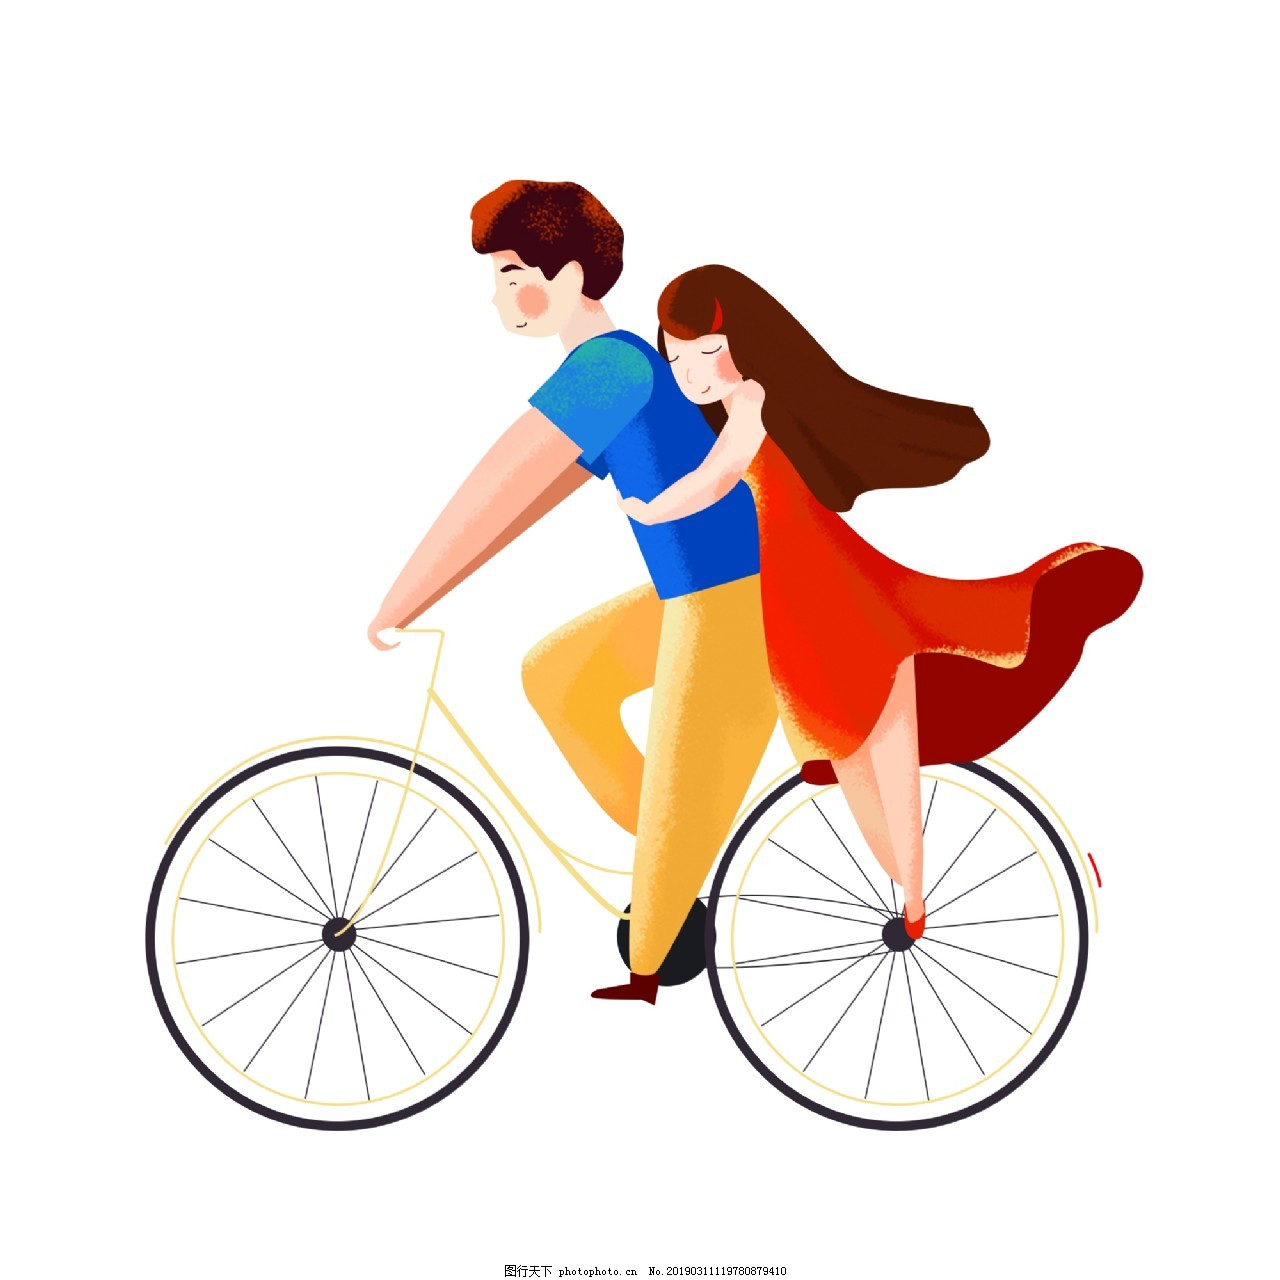 單車遊 秋遊 出遊 情侶出遊, 自行車, 騎單車, 野外遊素材圖案，PSD和PNG圖片免費下載